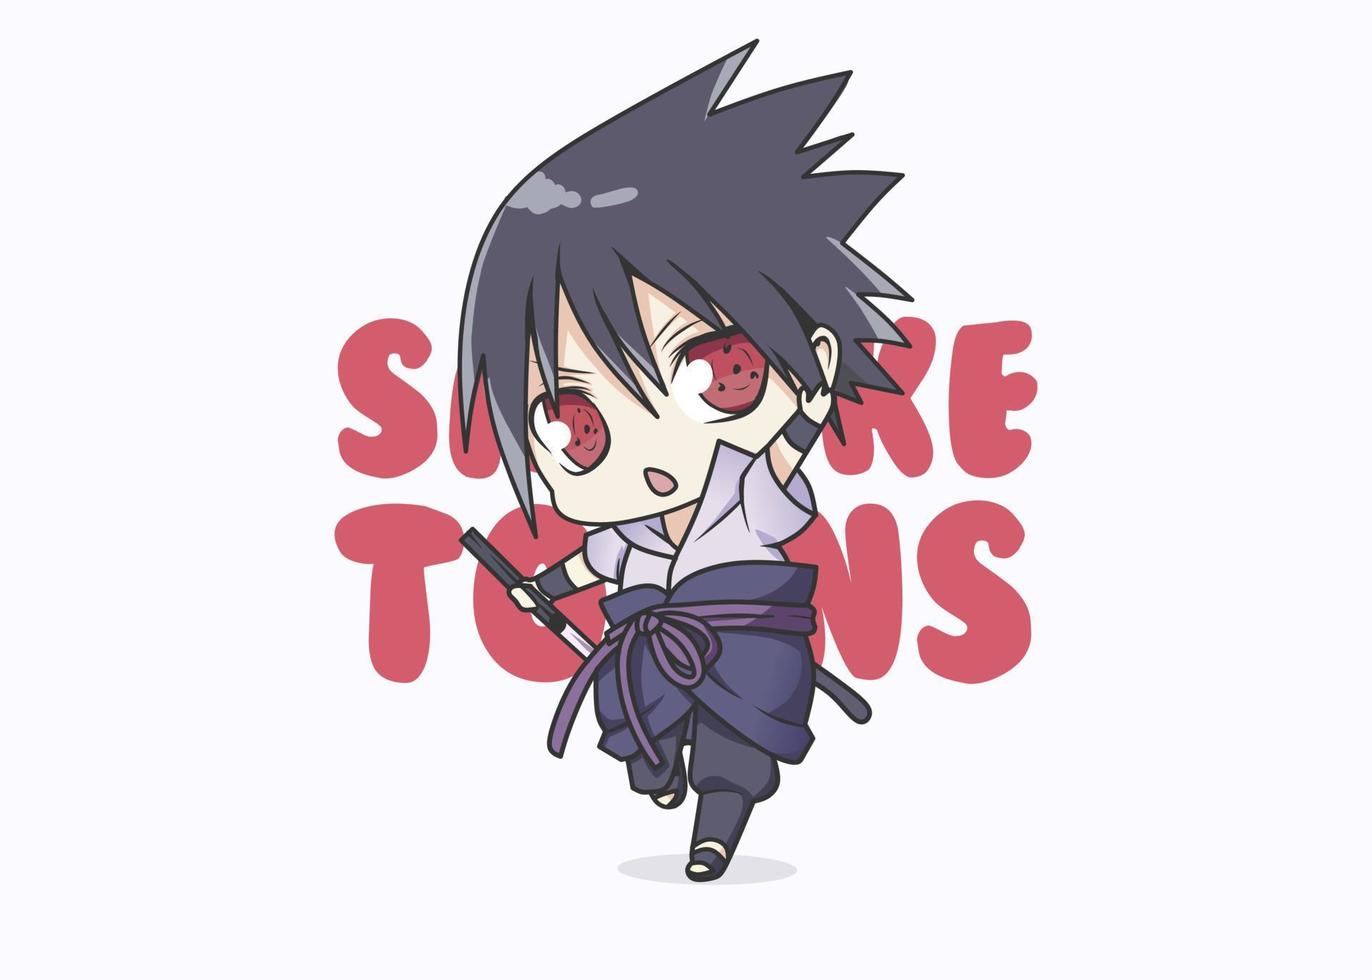 cute sasuke illustration, icon vector, flat cartoon style. vector